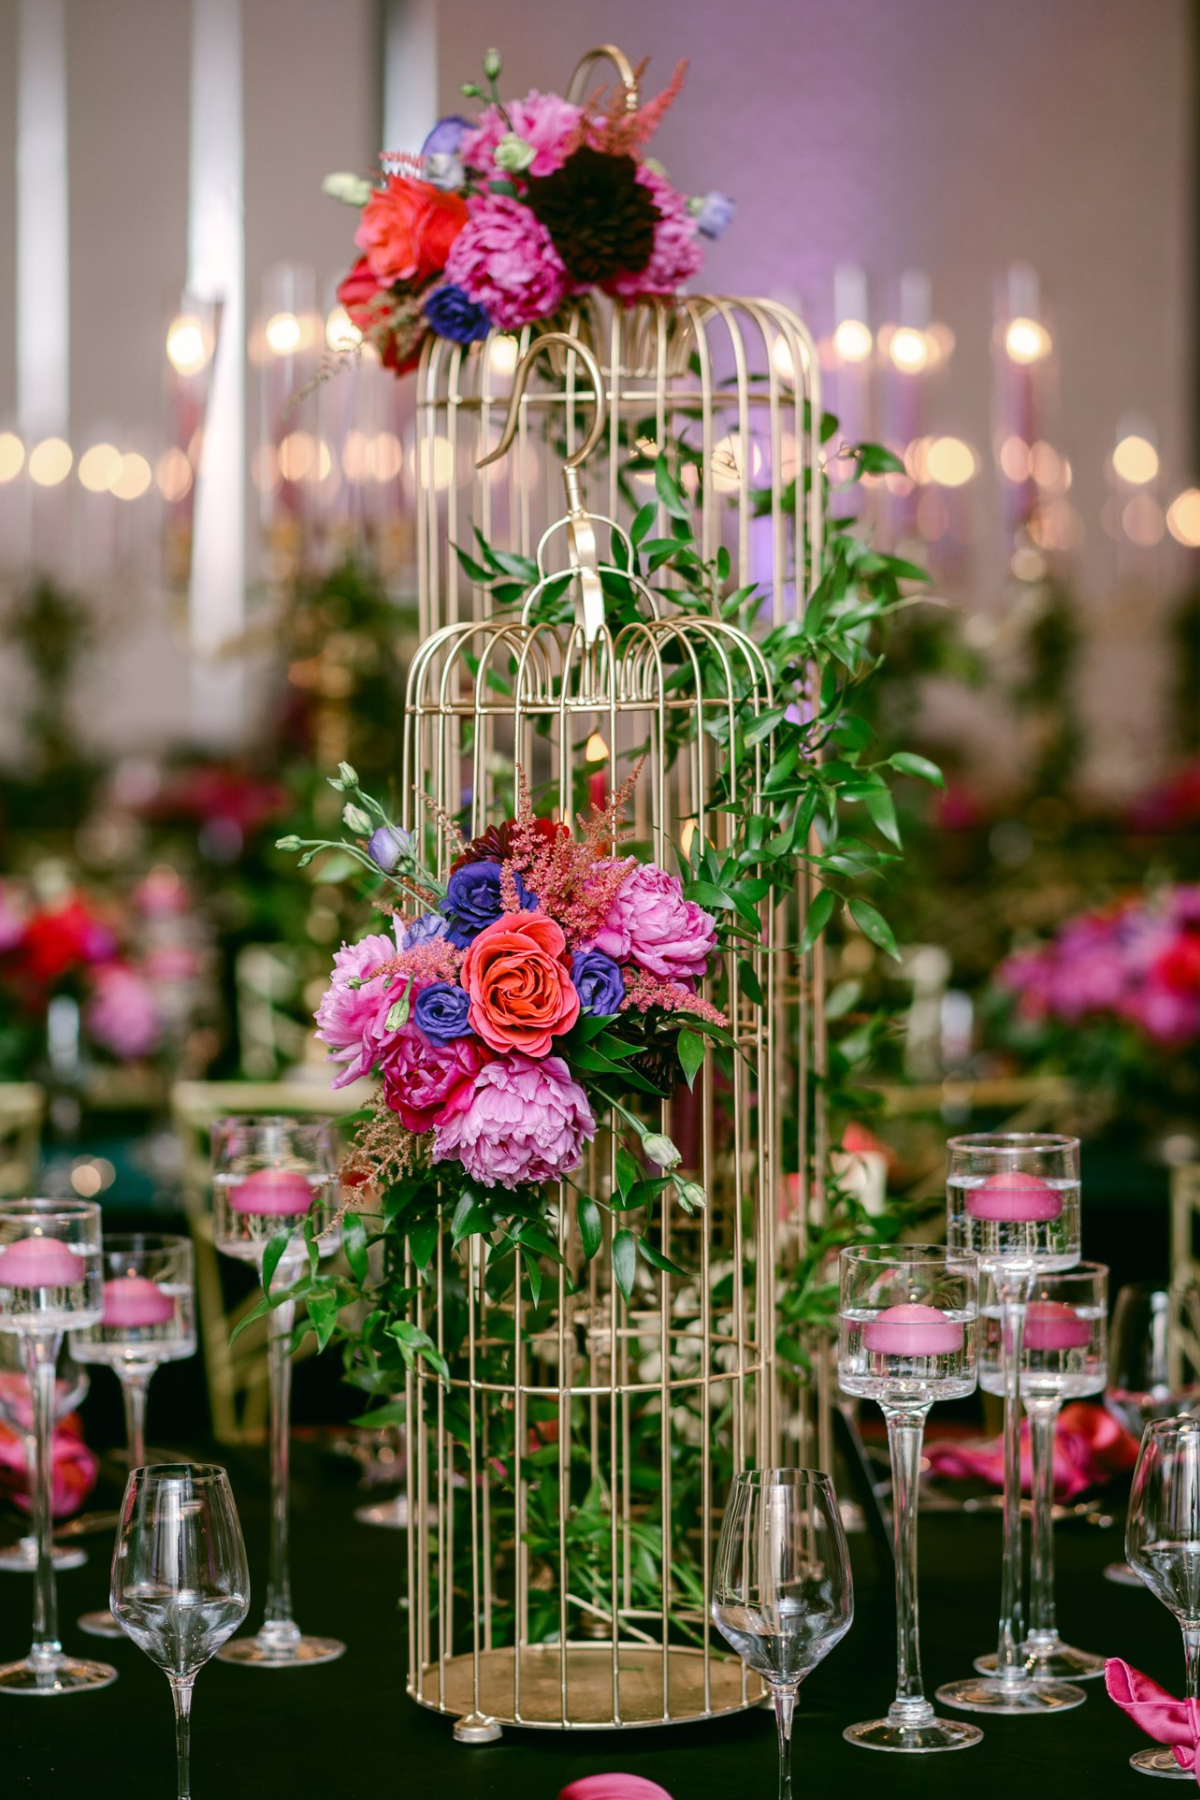 secret-garden-wedding-reception-greenery-pink-purple-gold-birdcage-centerpiece